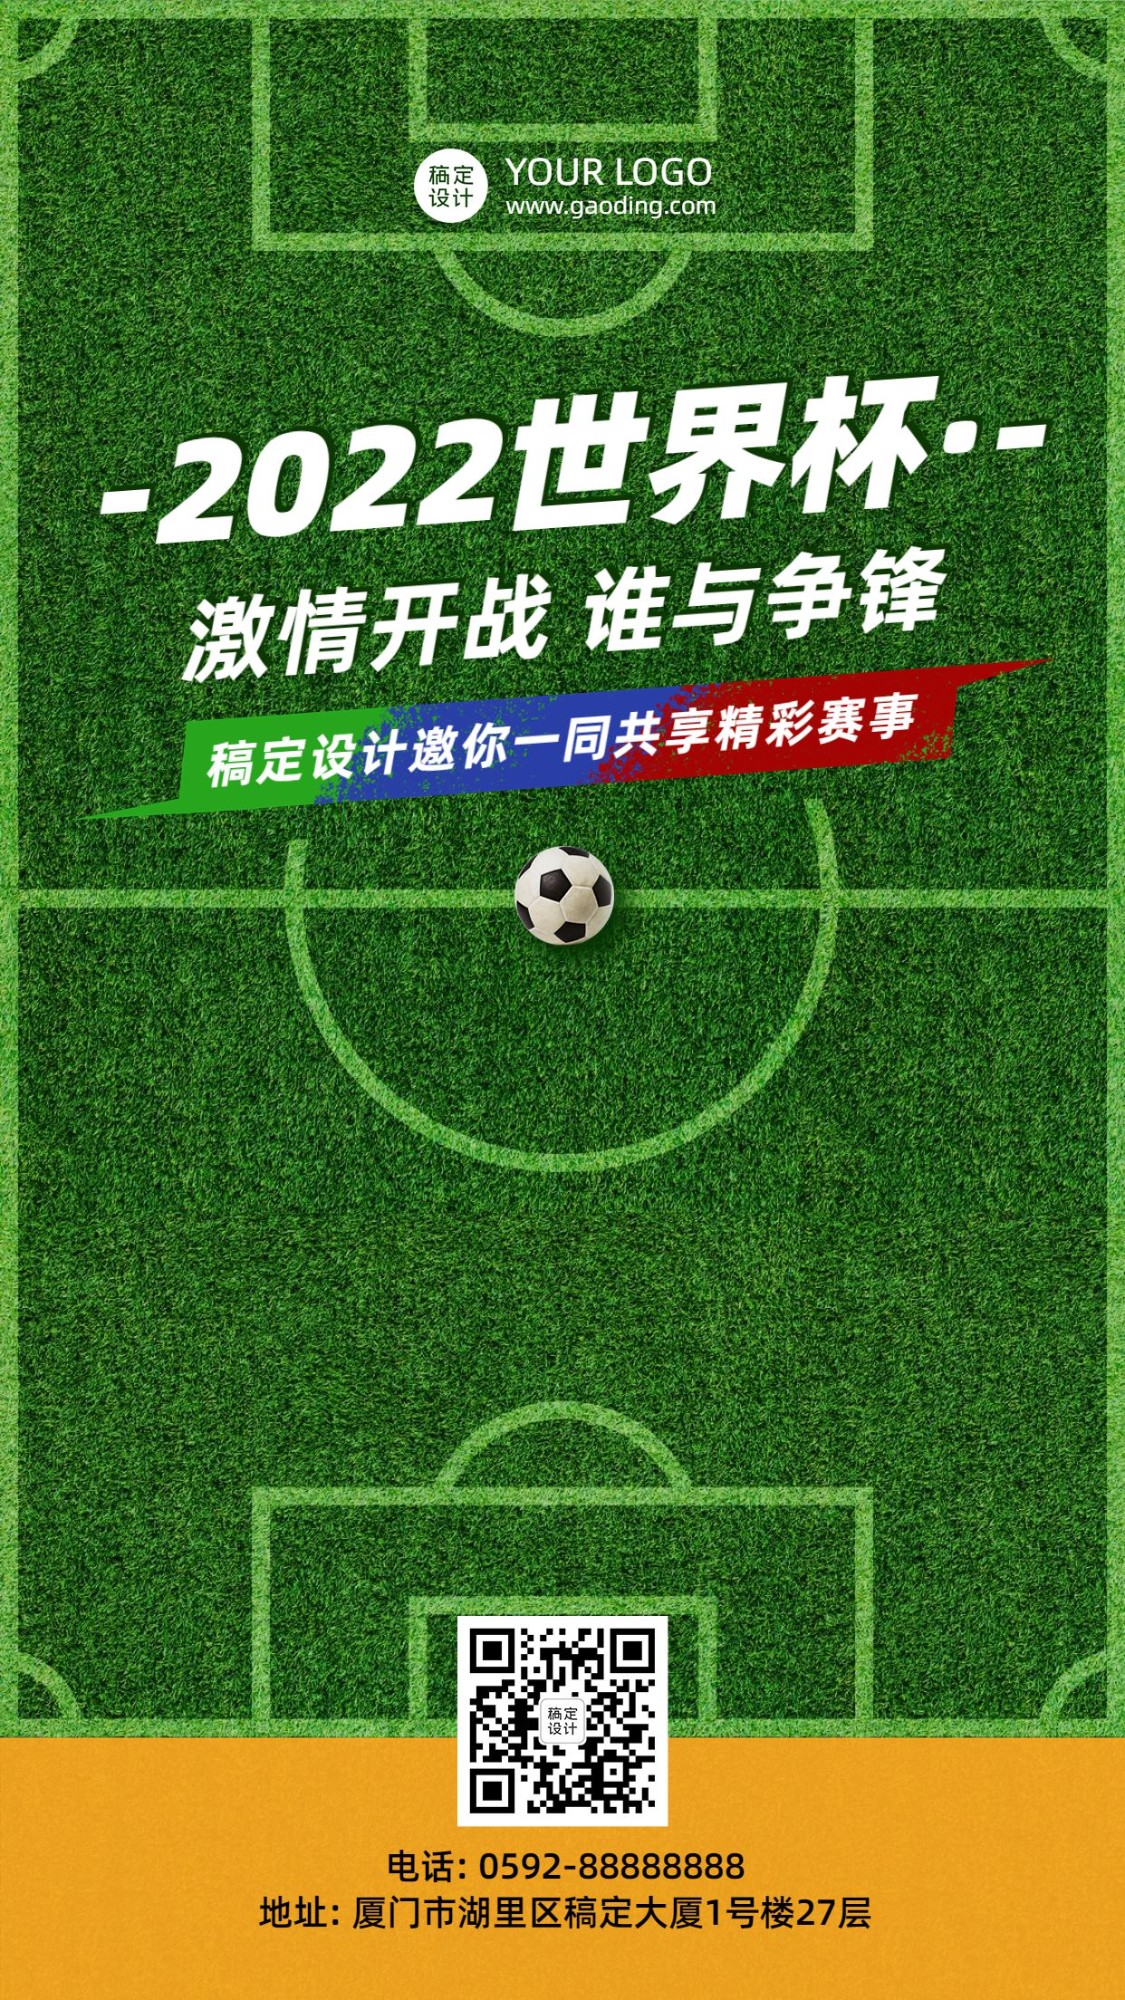 2022世界杯足球营销活动手机海报